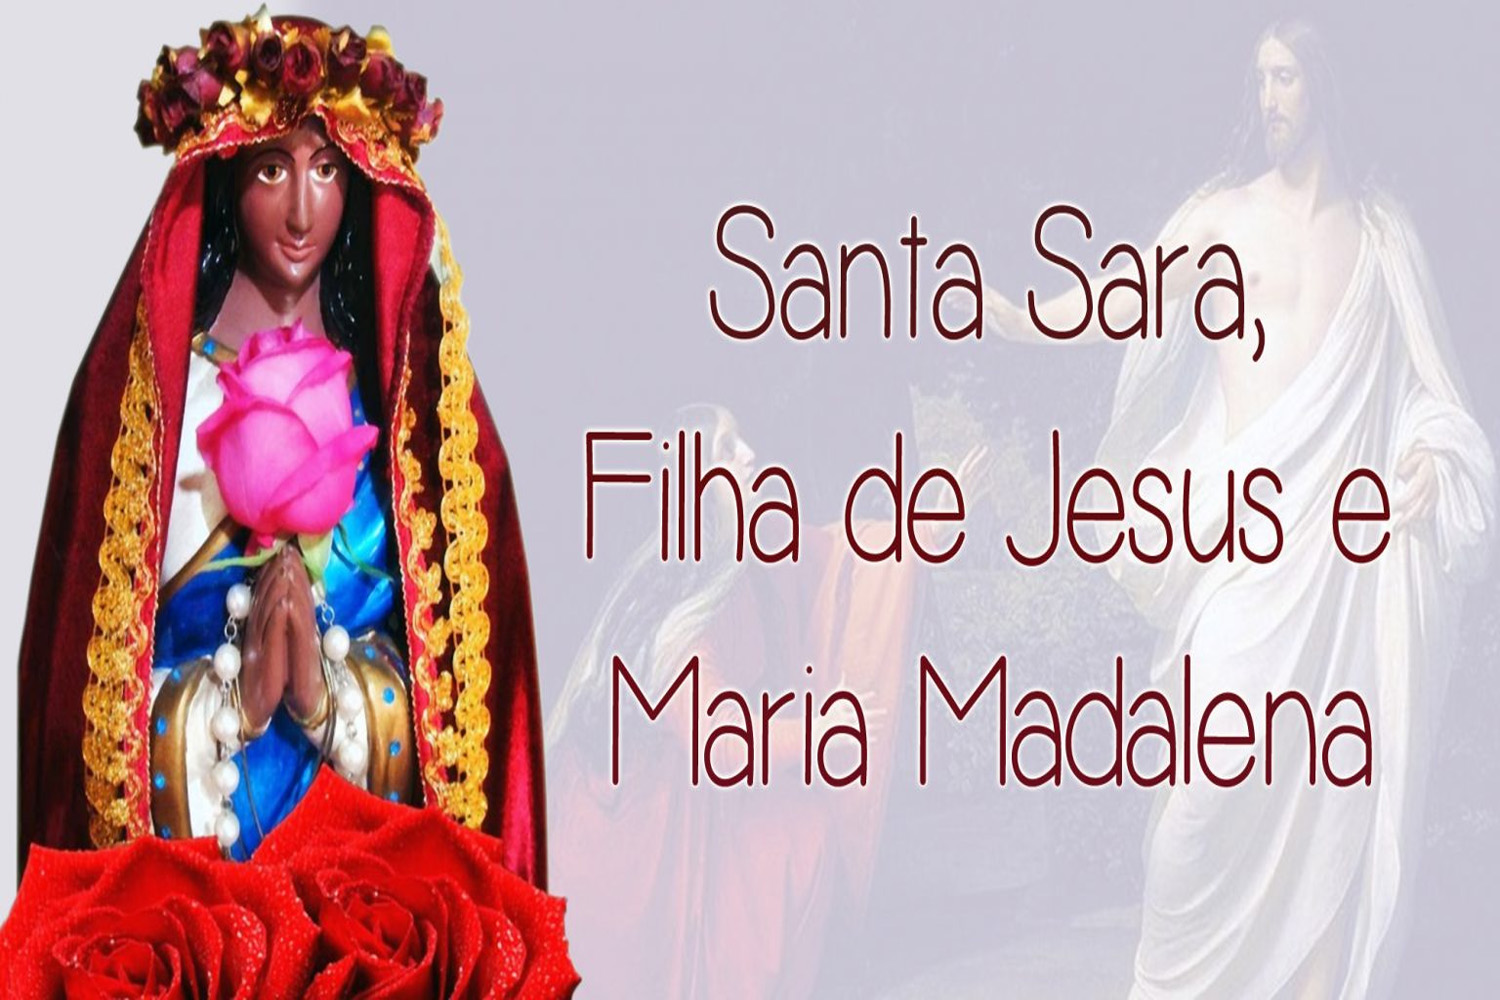 Santa Sara, Filha de Jesus e Maria Madalena